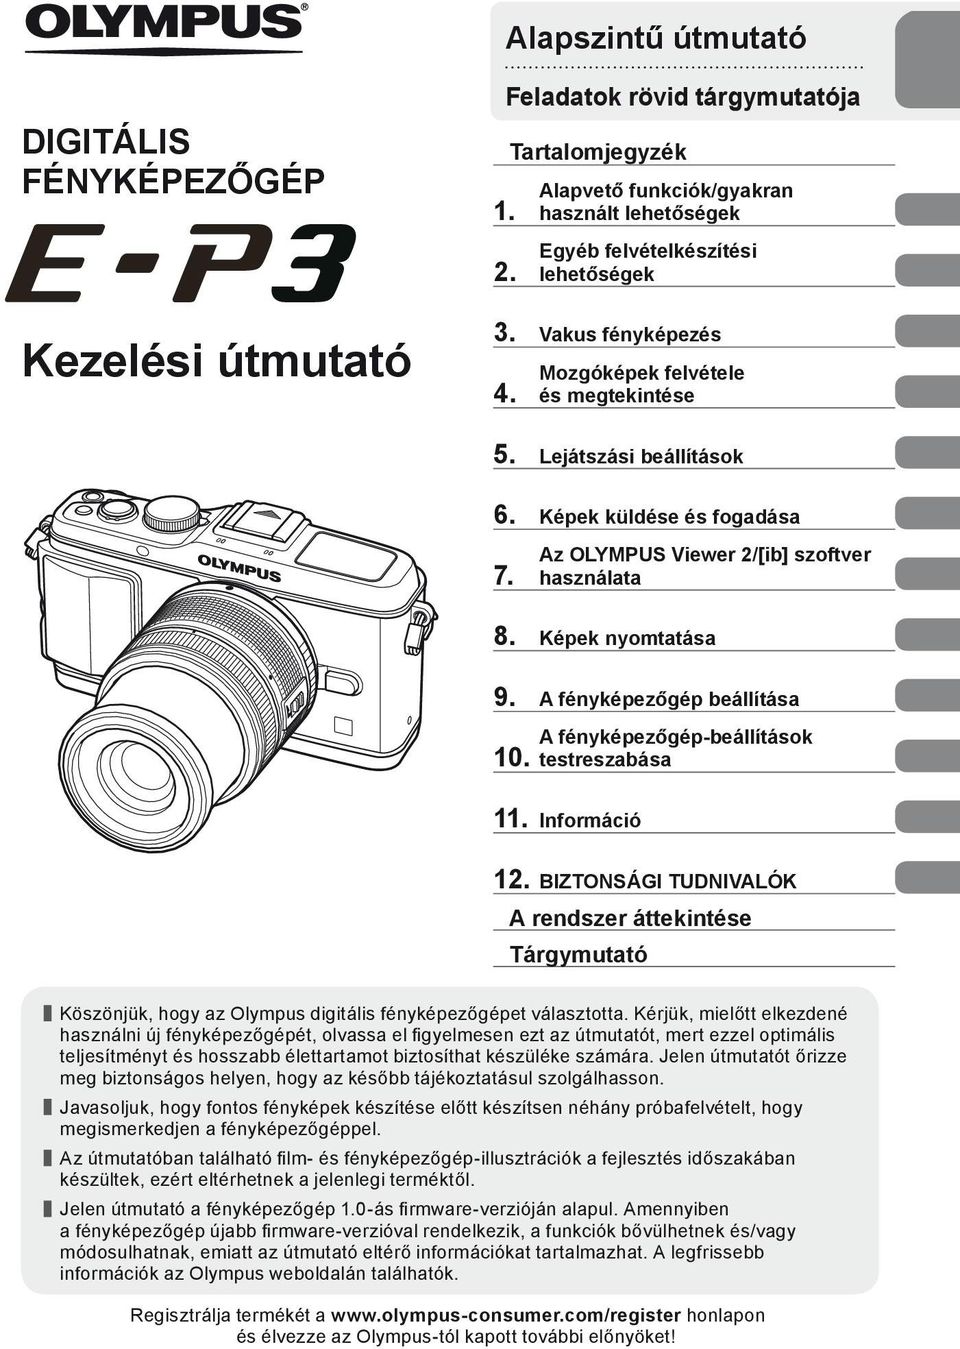 A fényképezőgép beállítása 10. A fényképezőgép-beállítások testreszabása 11. Információ 12.